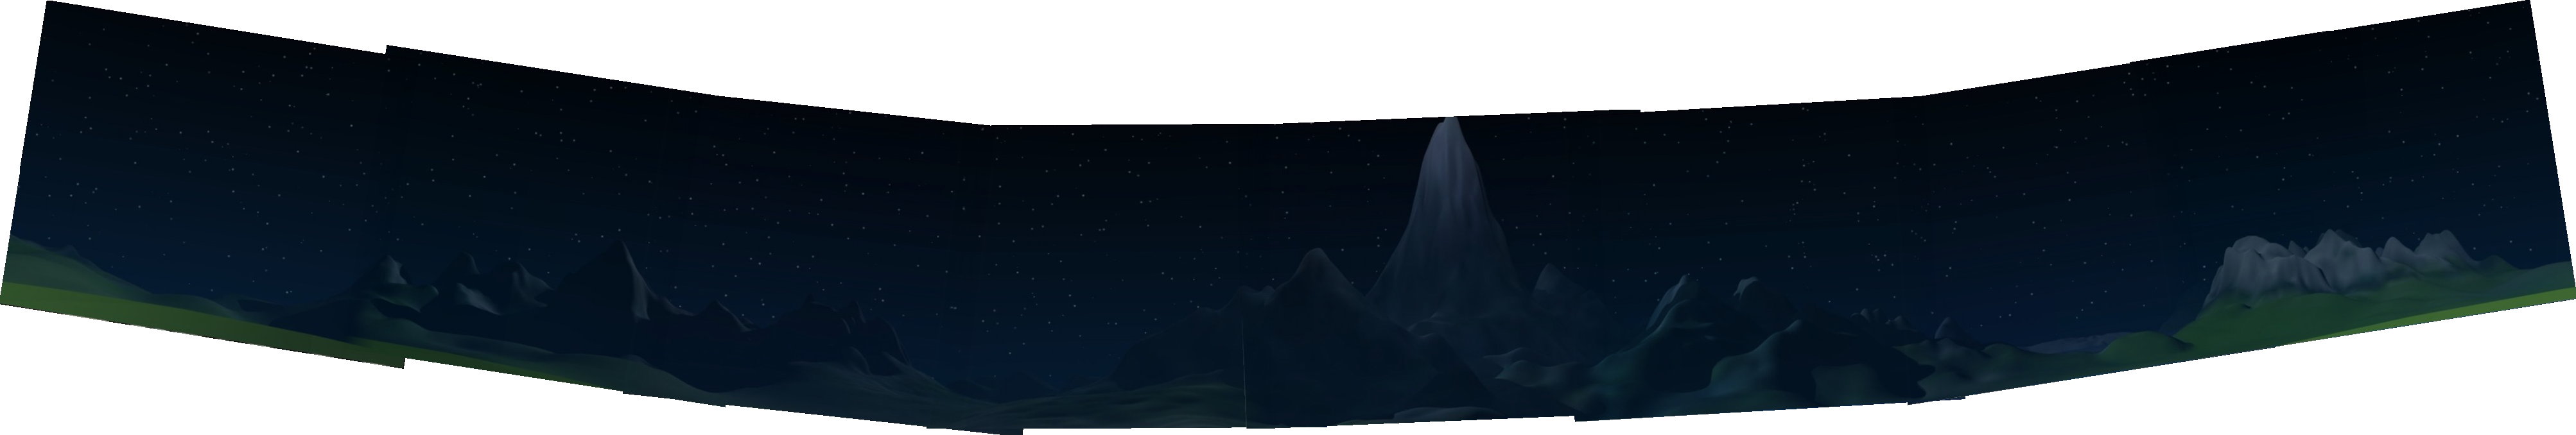 panorama of Valinor